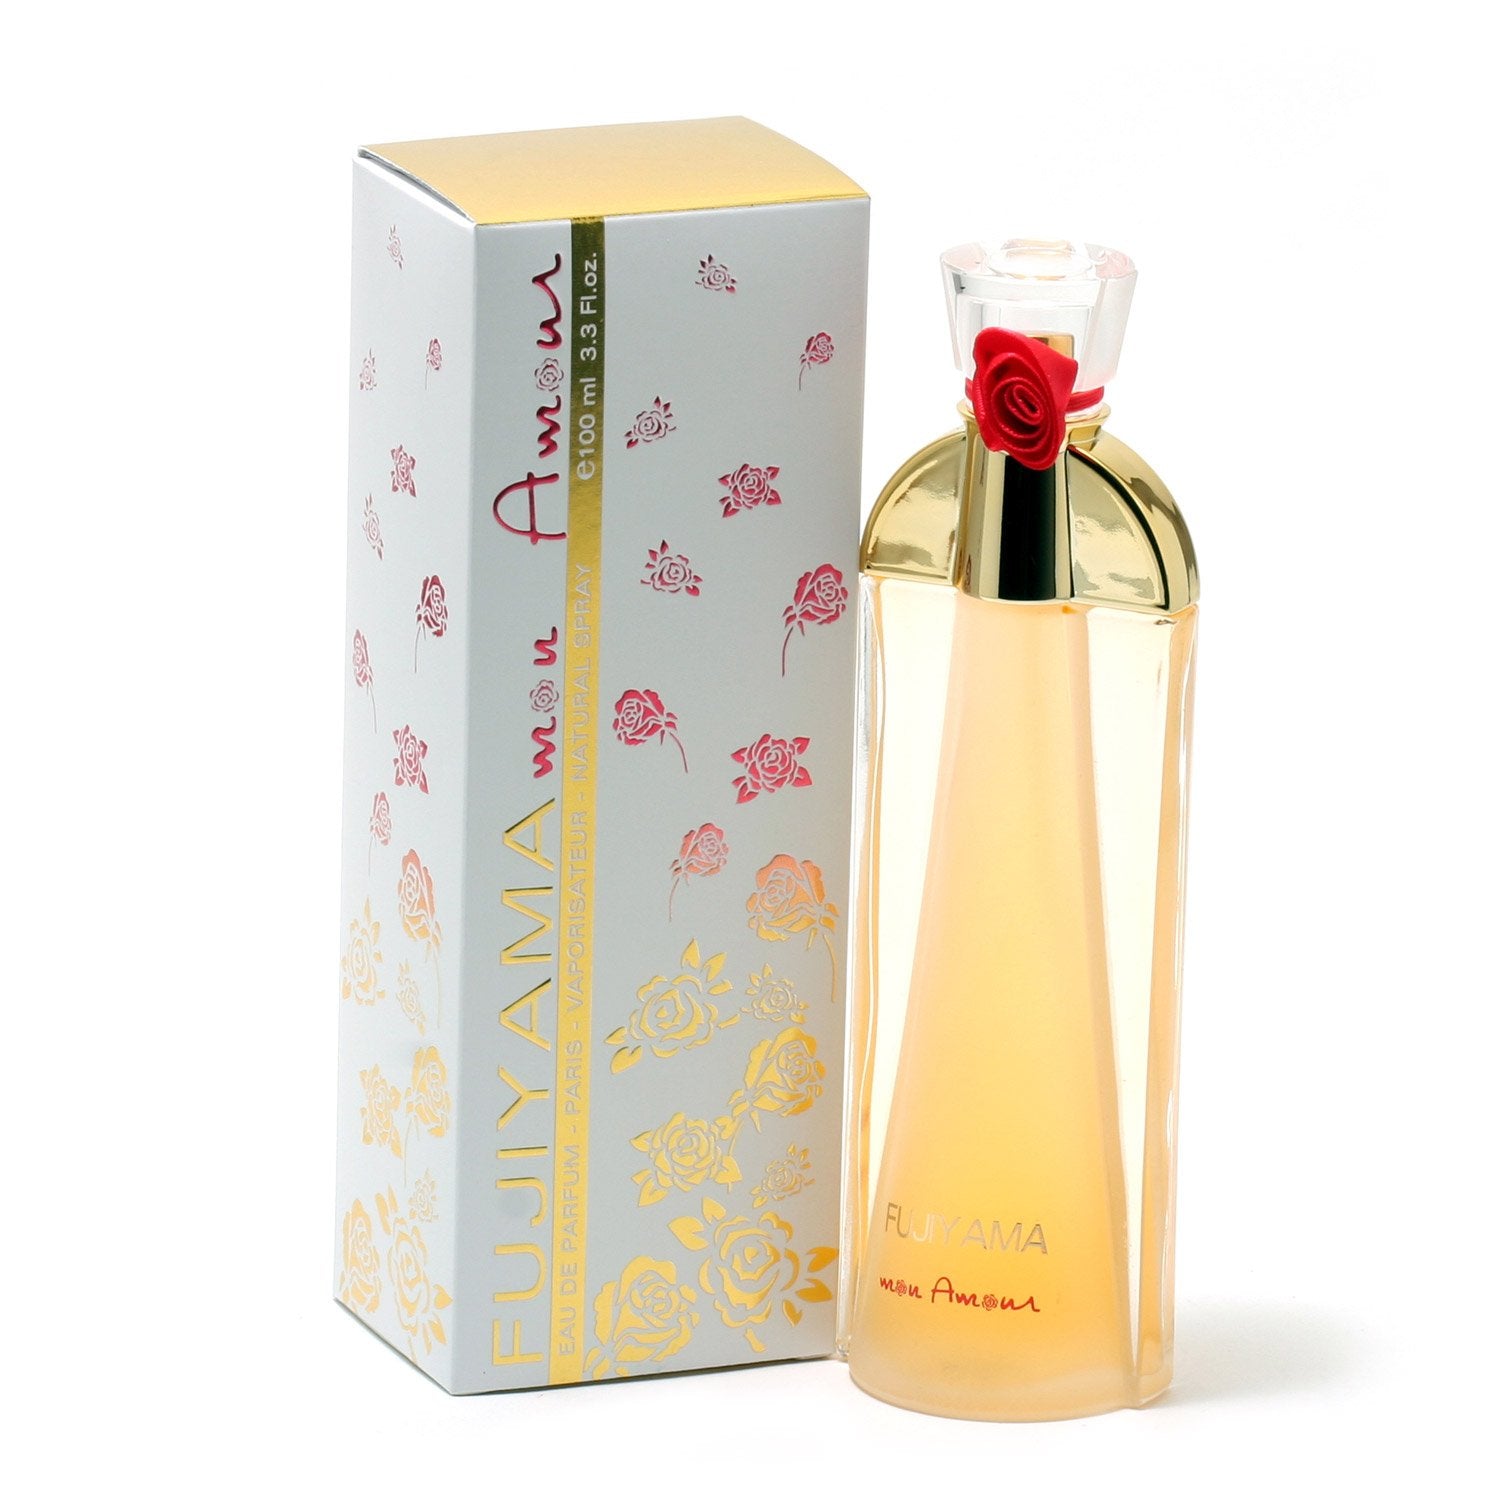 Perfume - FUJIYAMA MON AMOUR FOR WOMEN BY SUCCES DE PARIS - EAU DE PARFUM SPRAY, 3.3 OZ